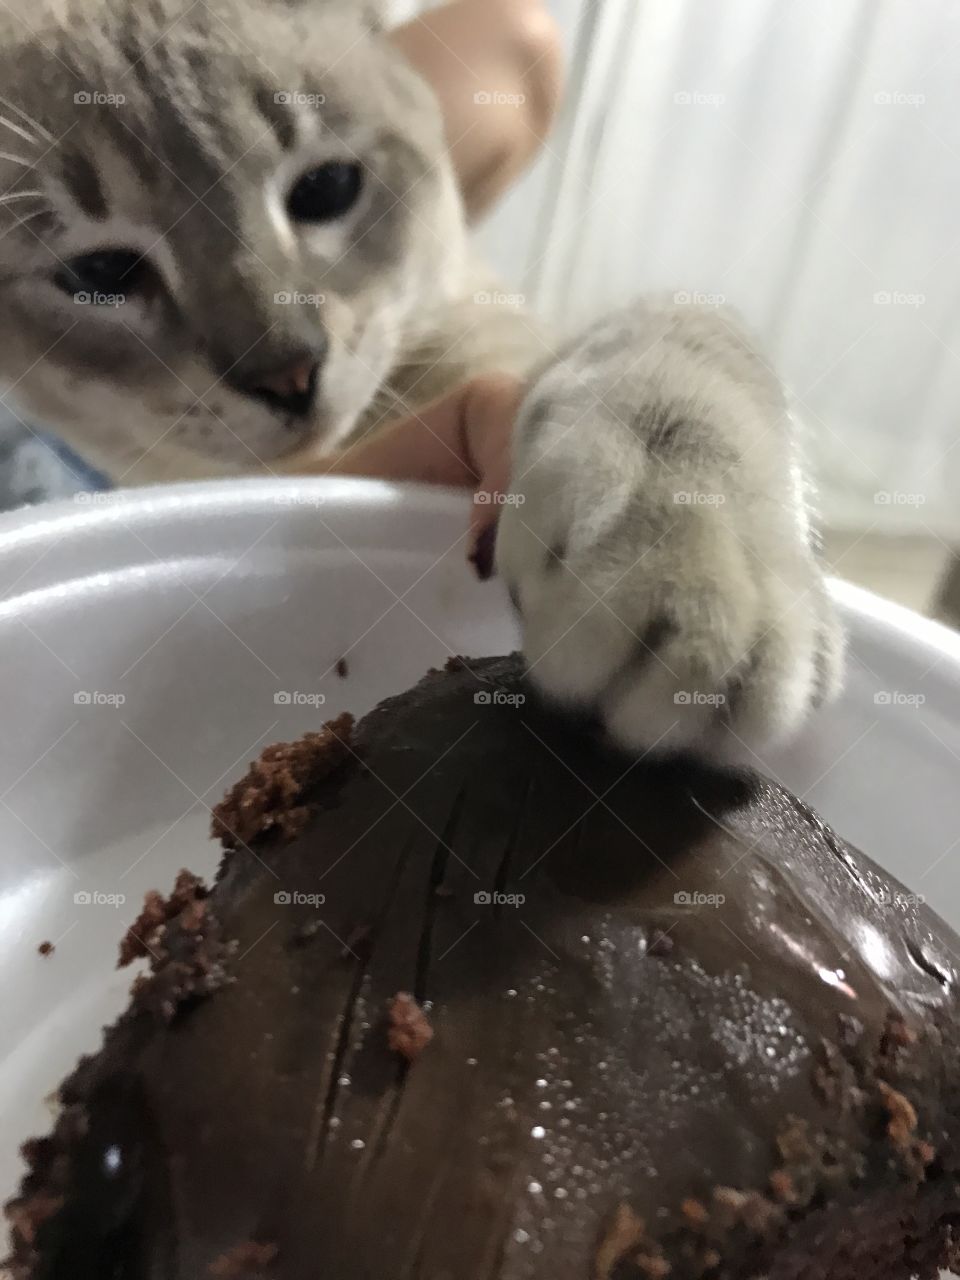 Querendo bolo! 